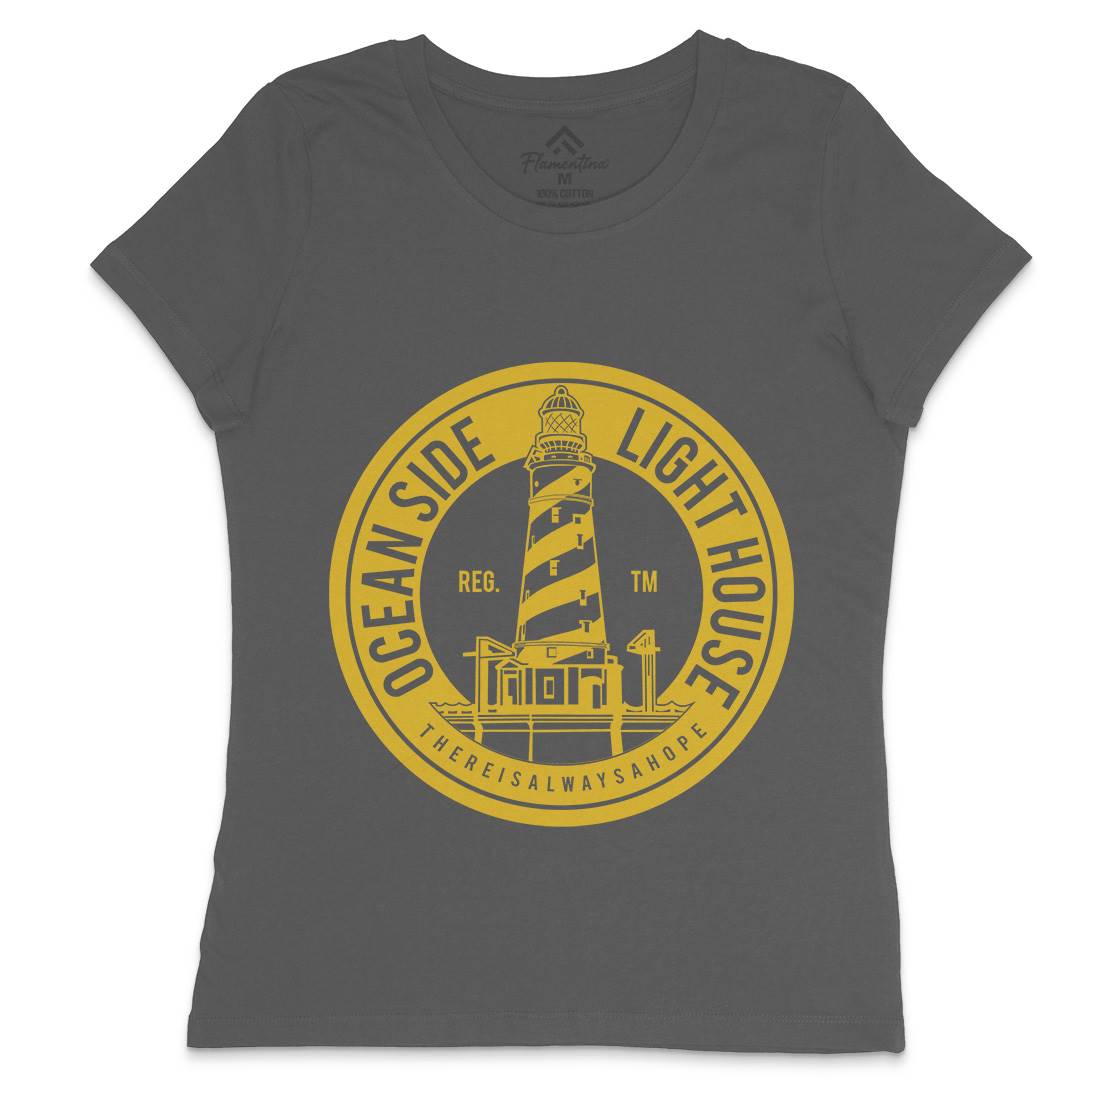 Ocean Side Womens Crew Neck T-Shirt Navy A096